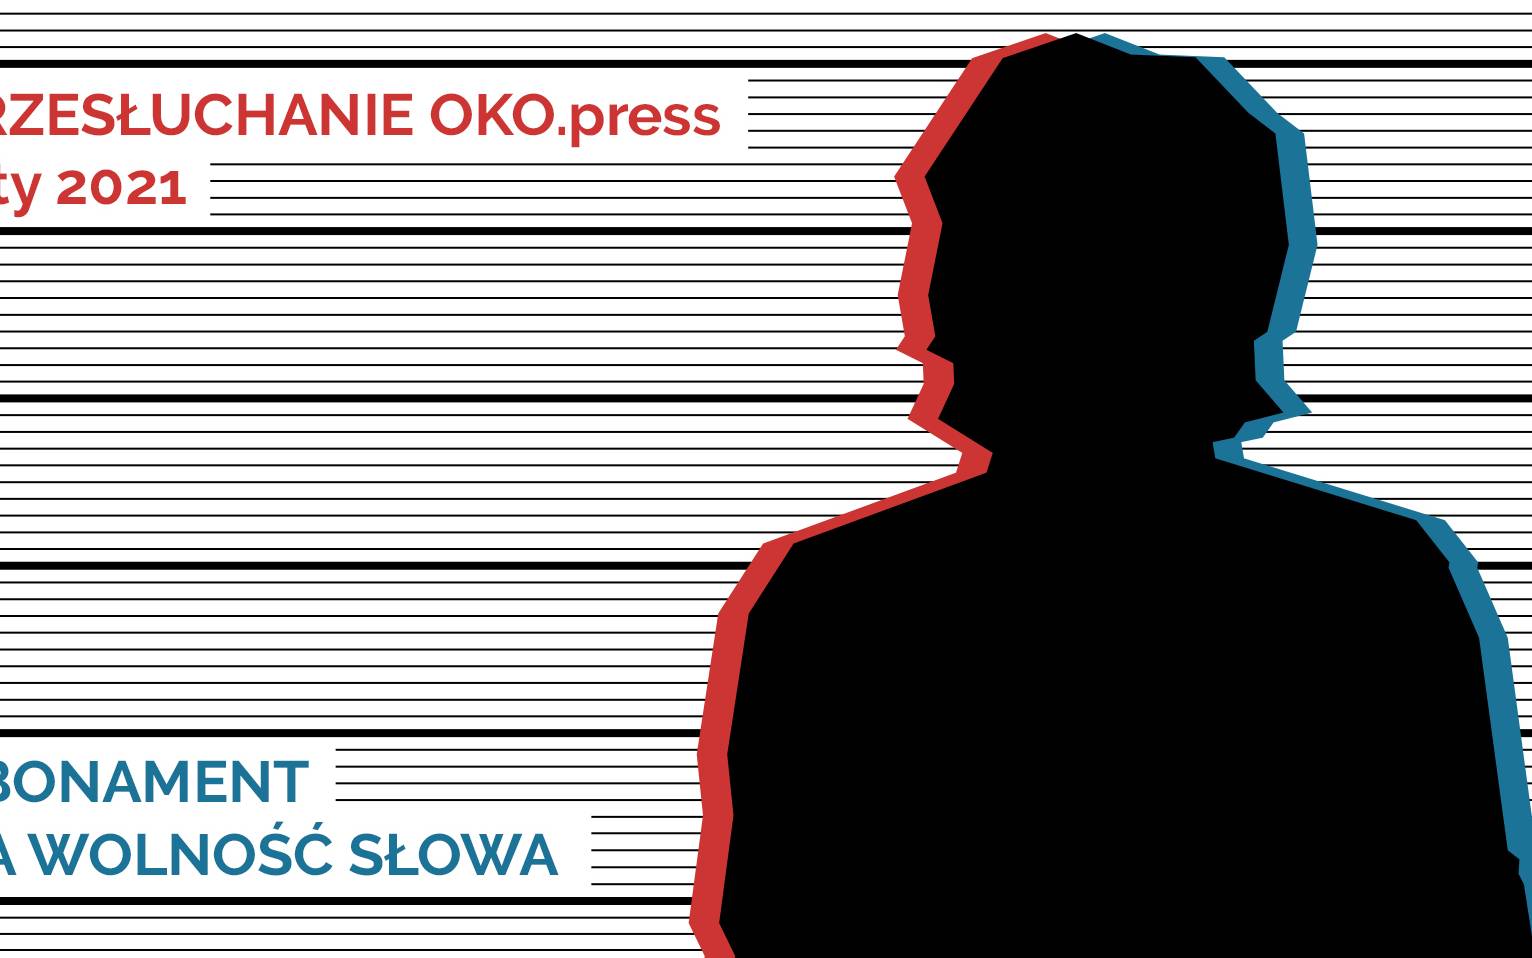 Grafika do artykułu Nowy sondaż OKO.press i szanse na wspólną listę opozycji. Przesłuchanie OKO.press - Luty 2021